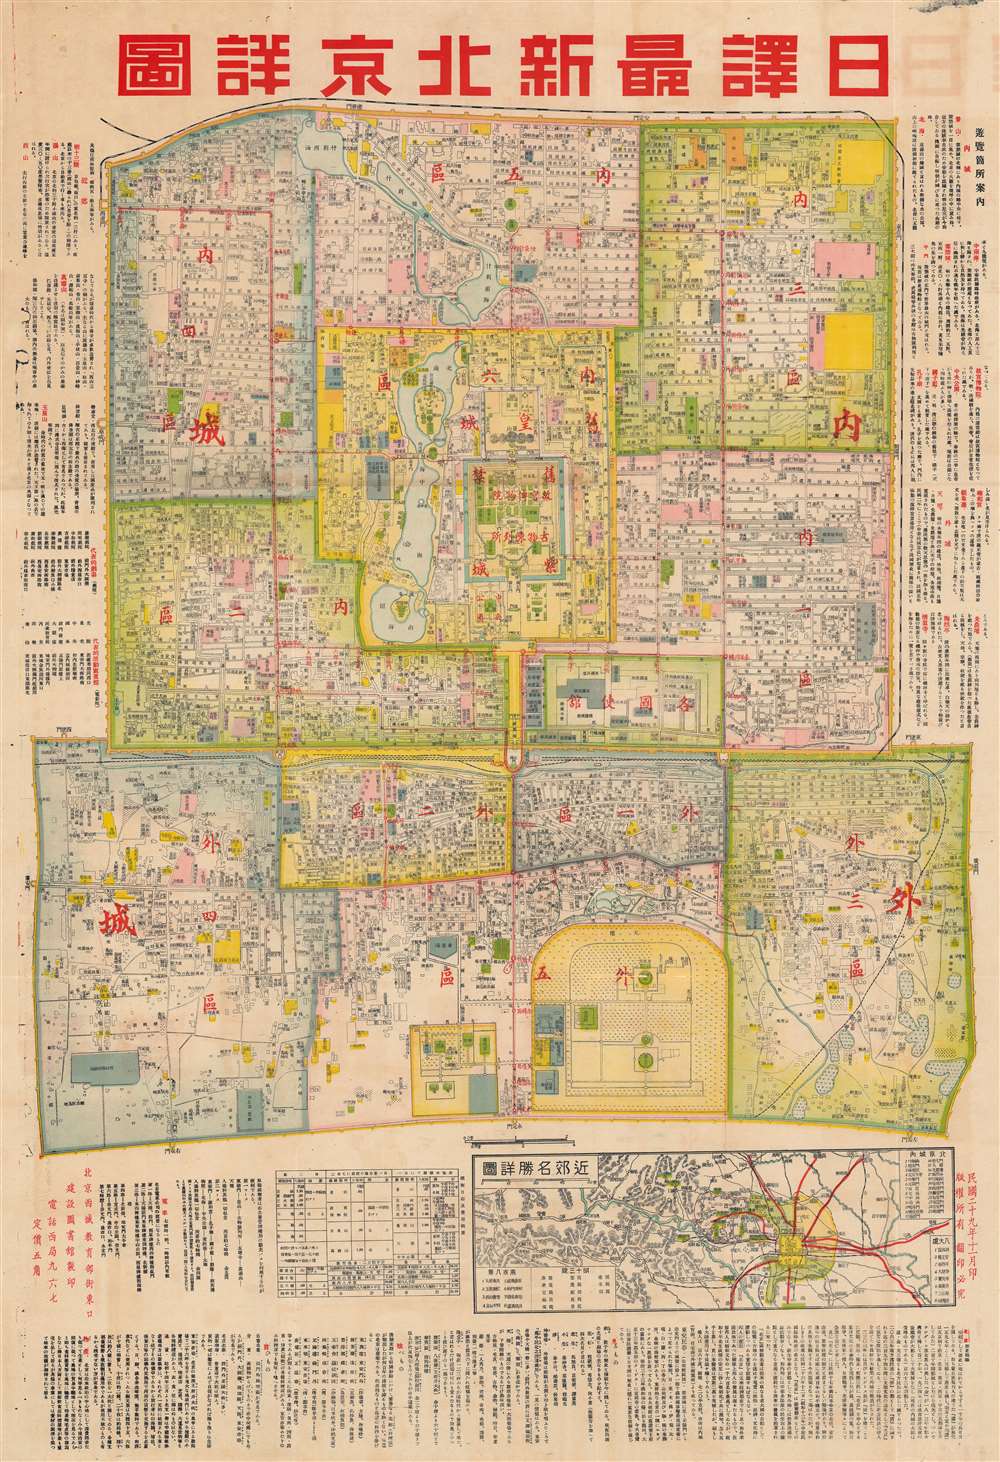 日譯最新北京詳圖 / [Latest Detailed Map of Beijing, Japanese Translation]. - Main View